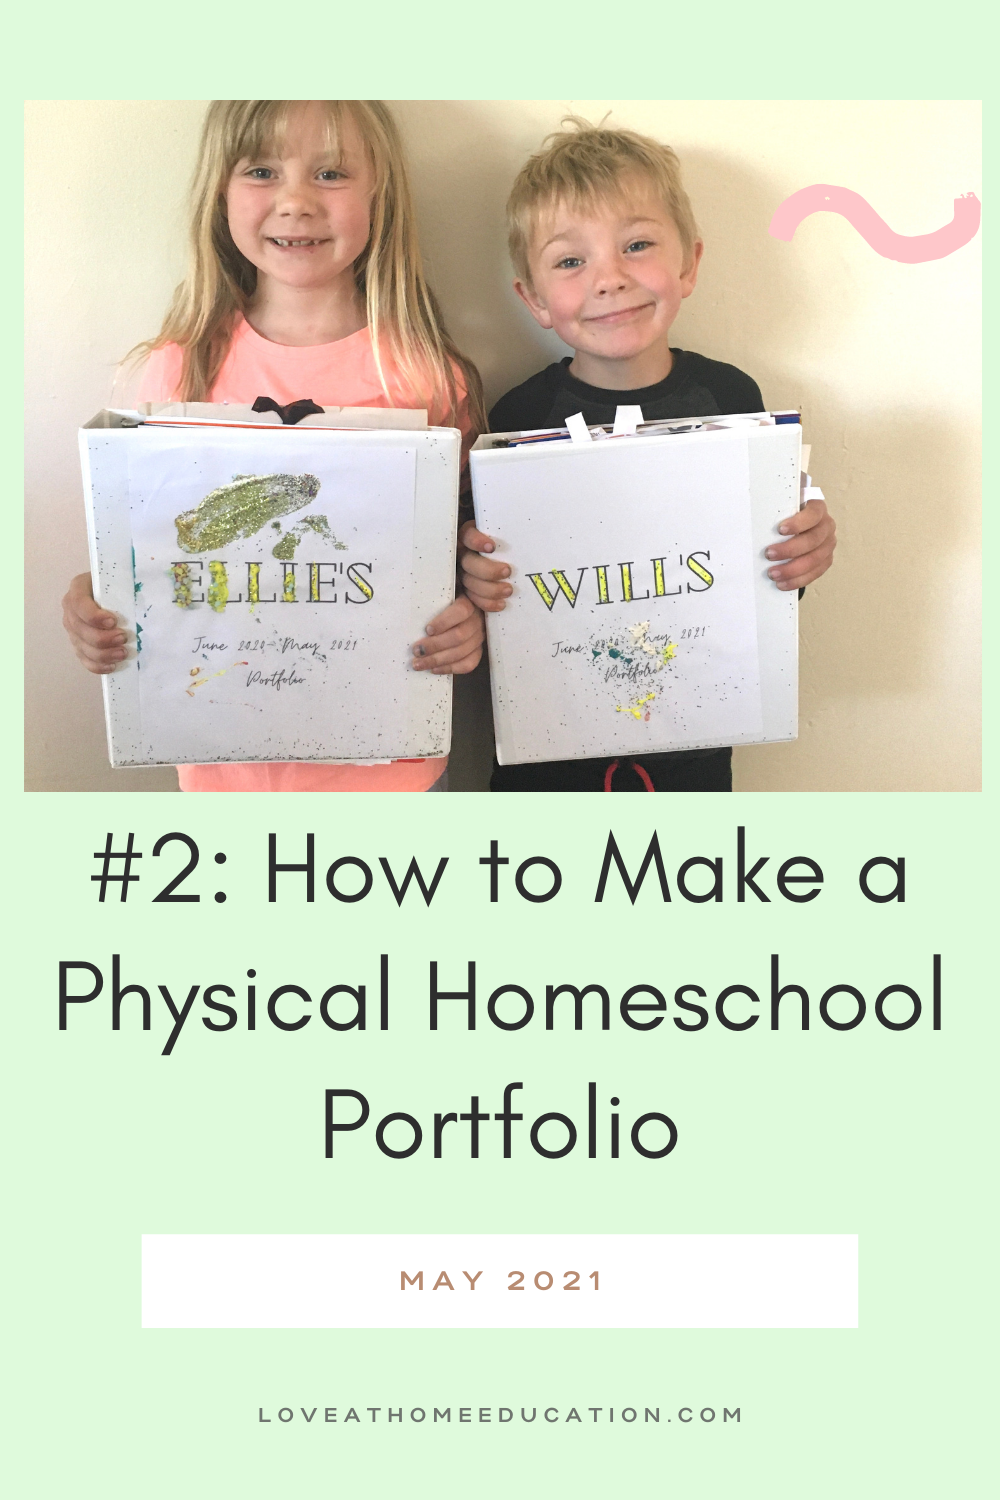 Homeschool Portfolio Series #2: Physical Portfolios